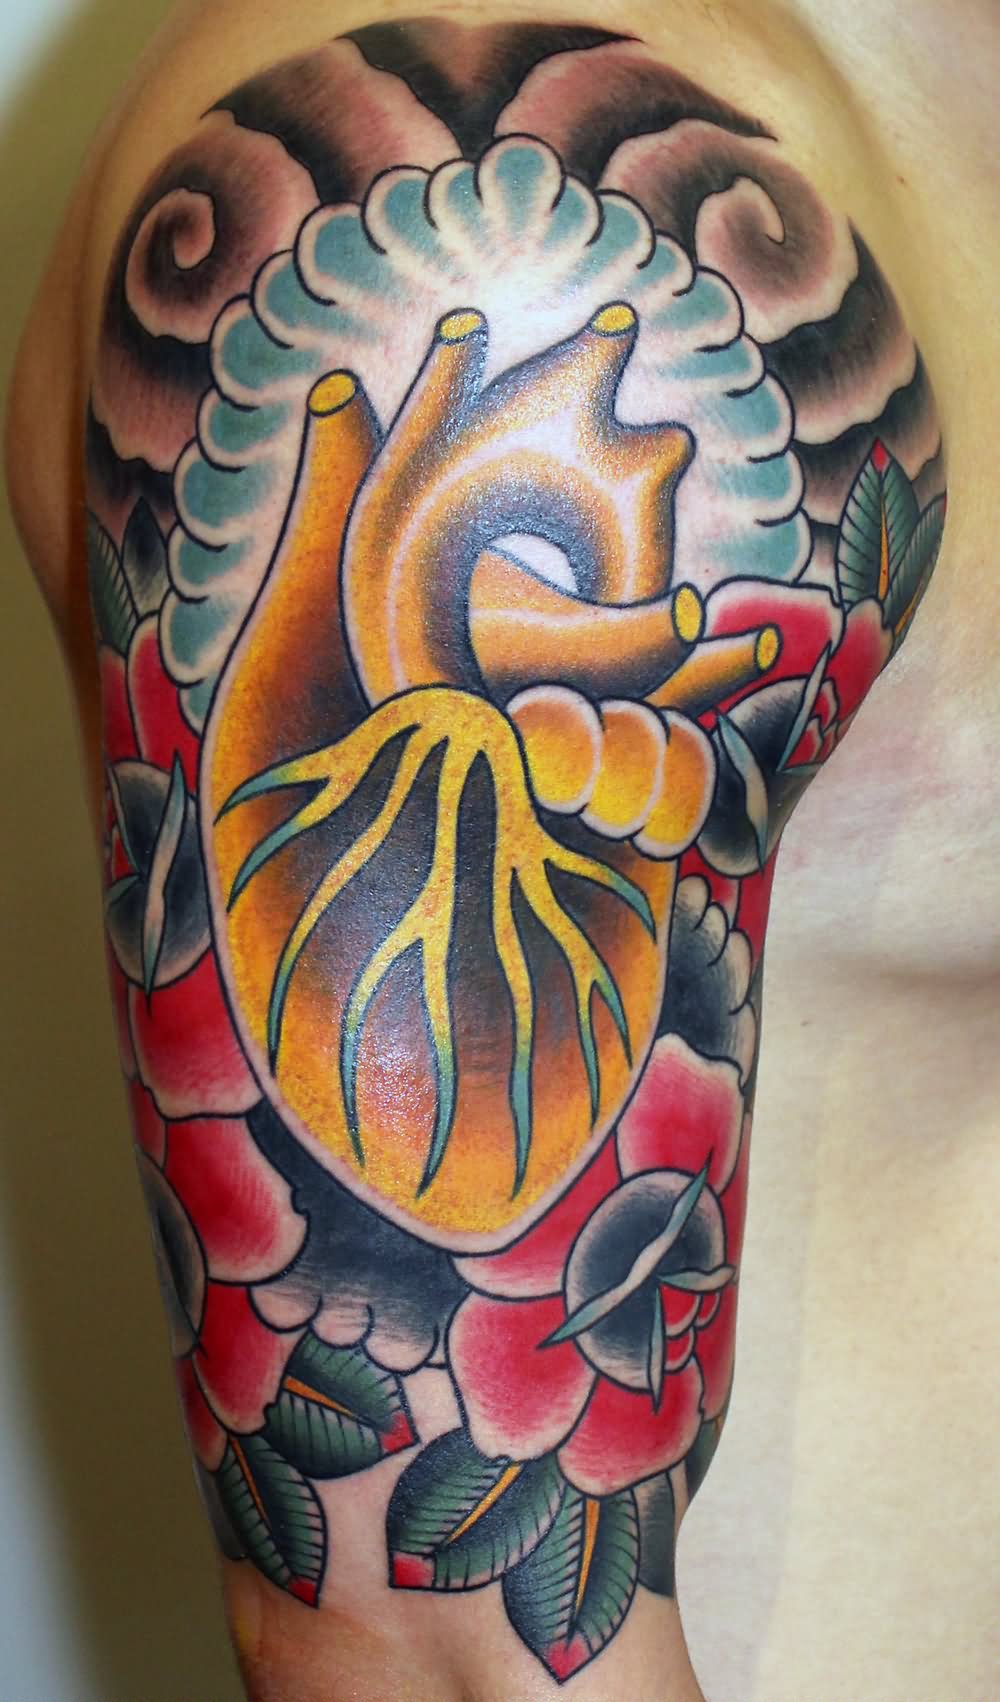 Golden heart & roses tattoo on half sleeve